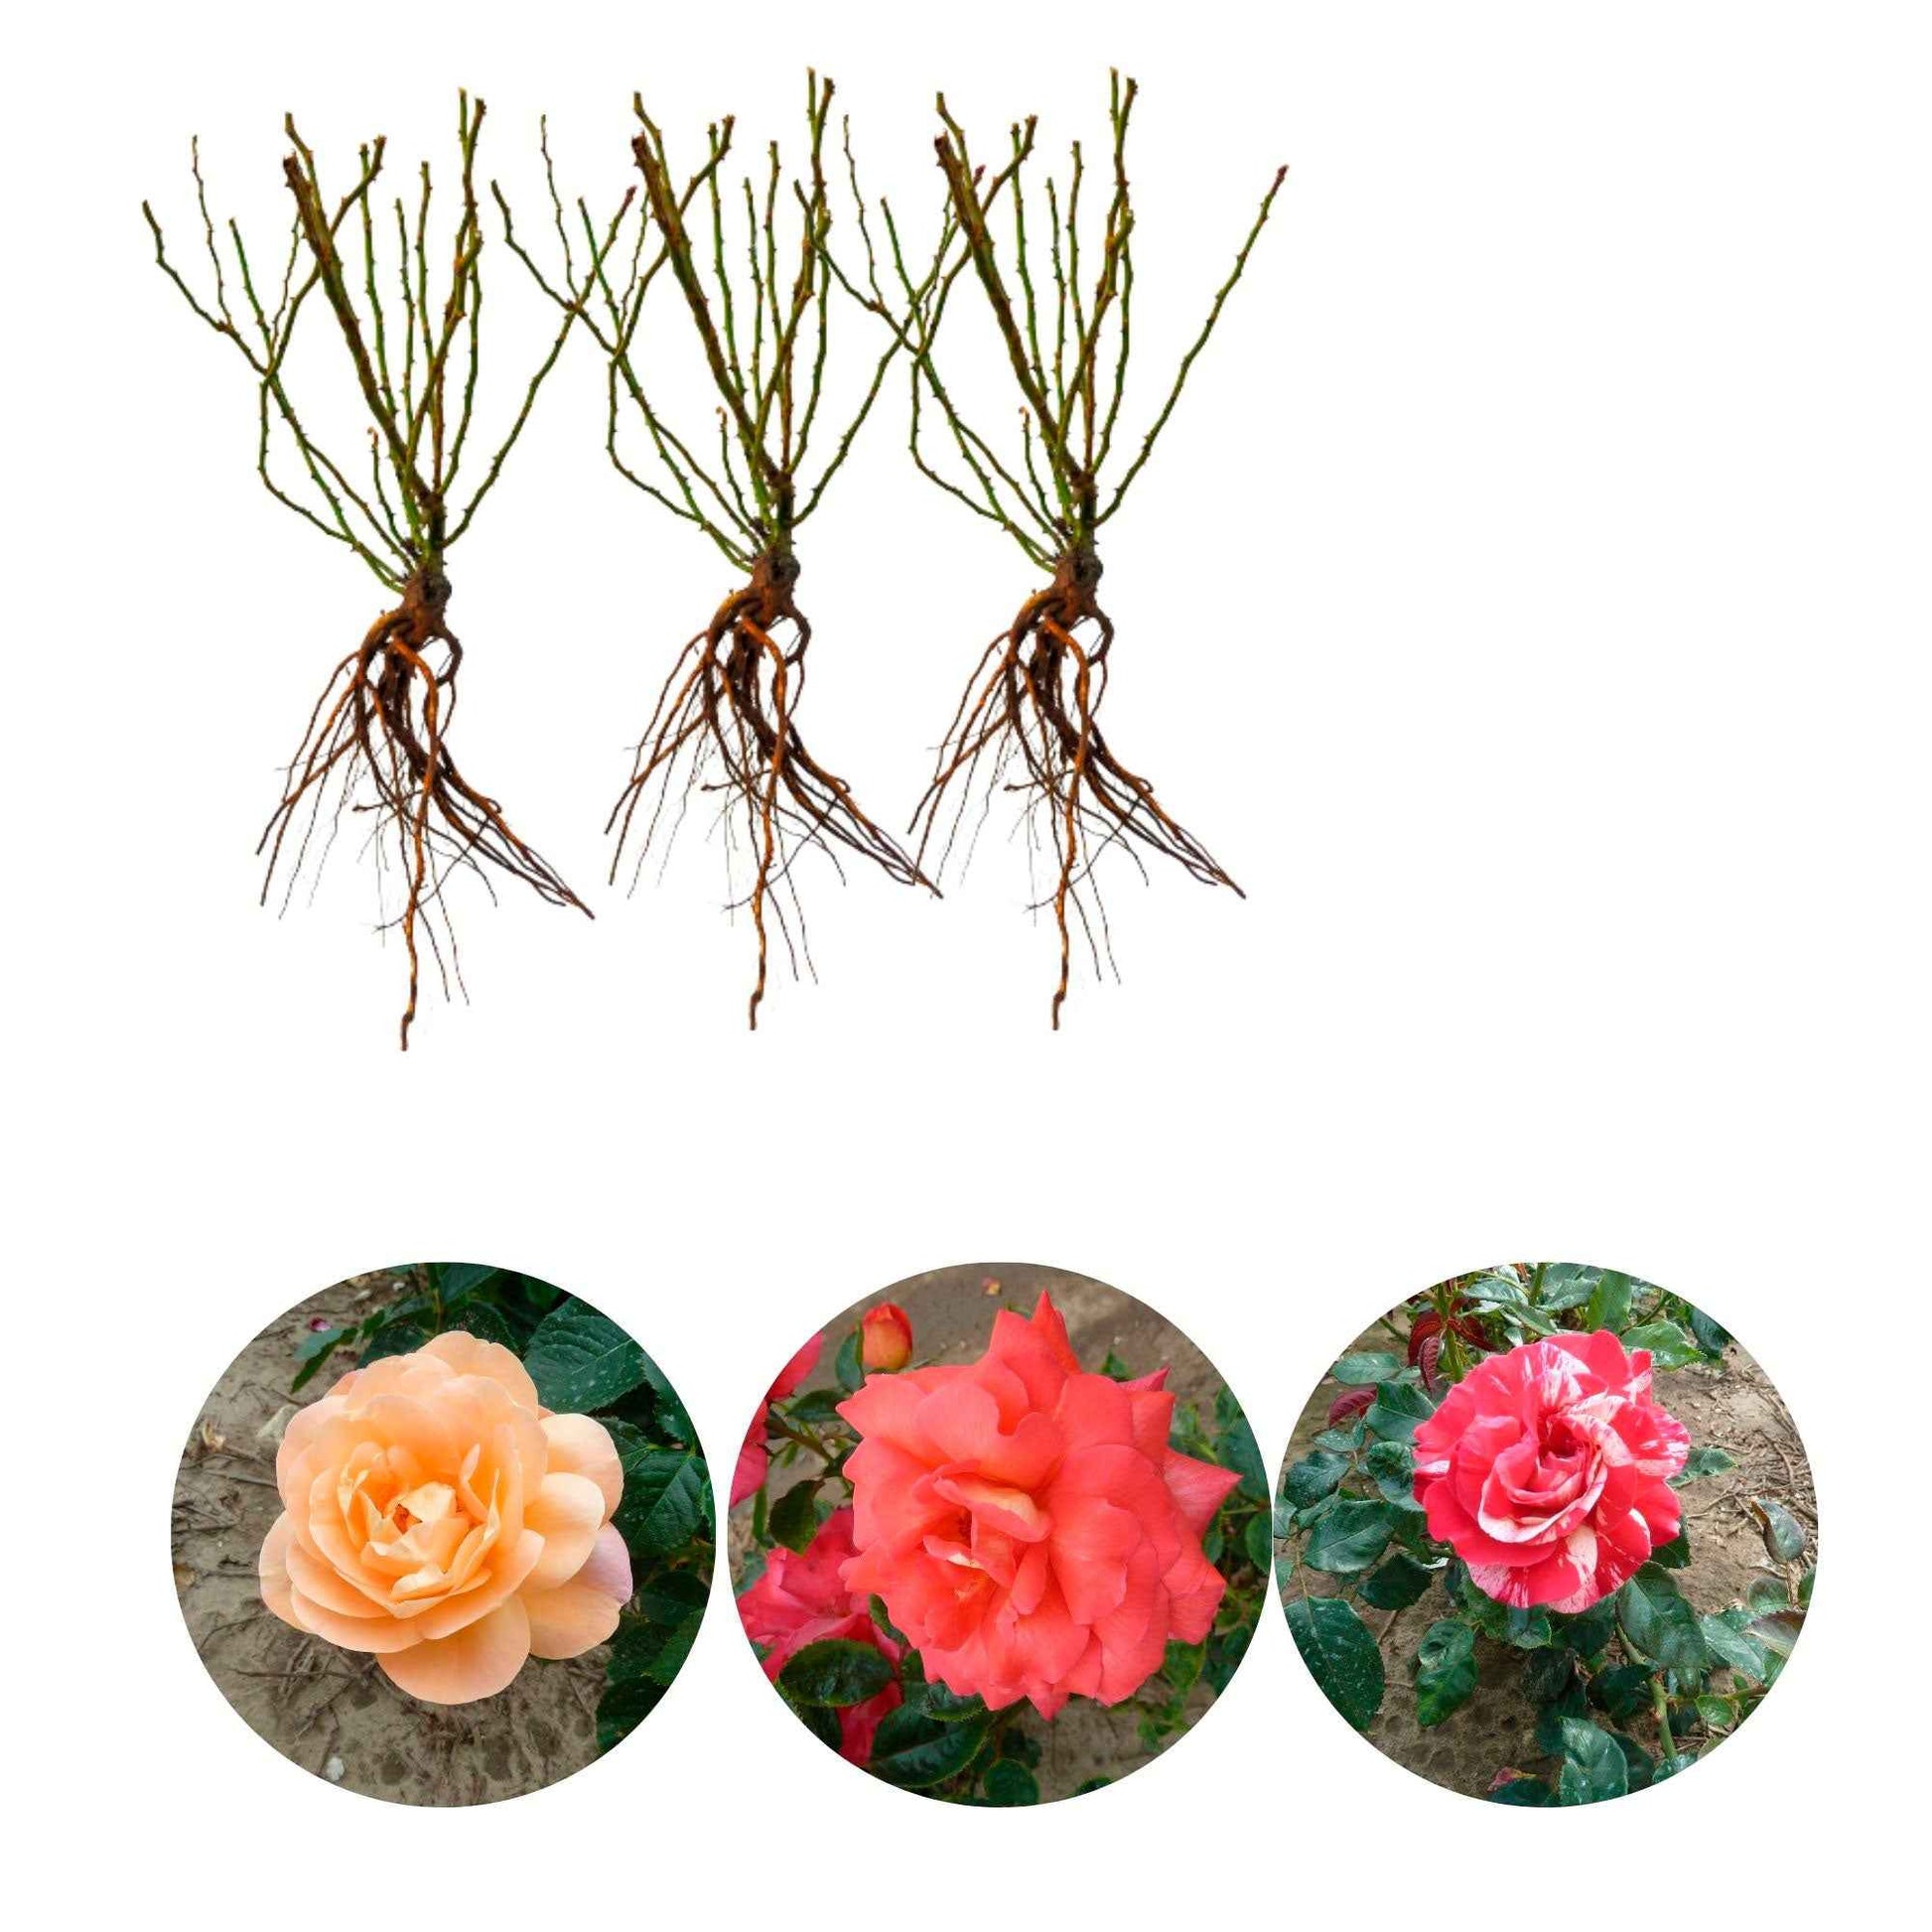 3x Großblütige Rose Rosa 'Duftend und bunt' Gemischt  - Wurzelnackte Pflanzen - Winterhart - Großblumige Rosen